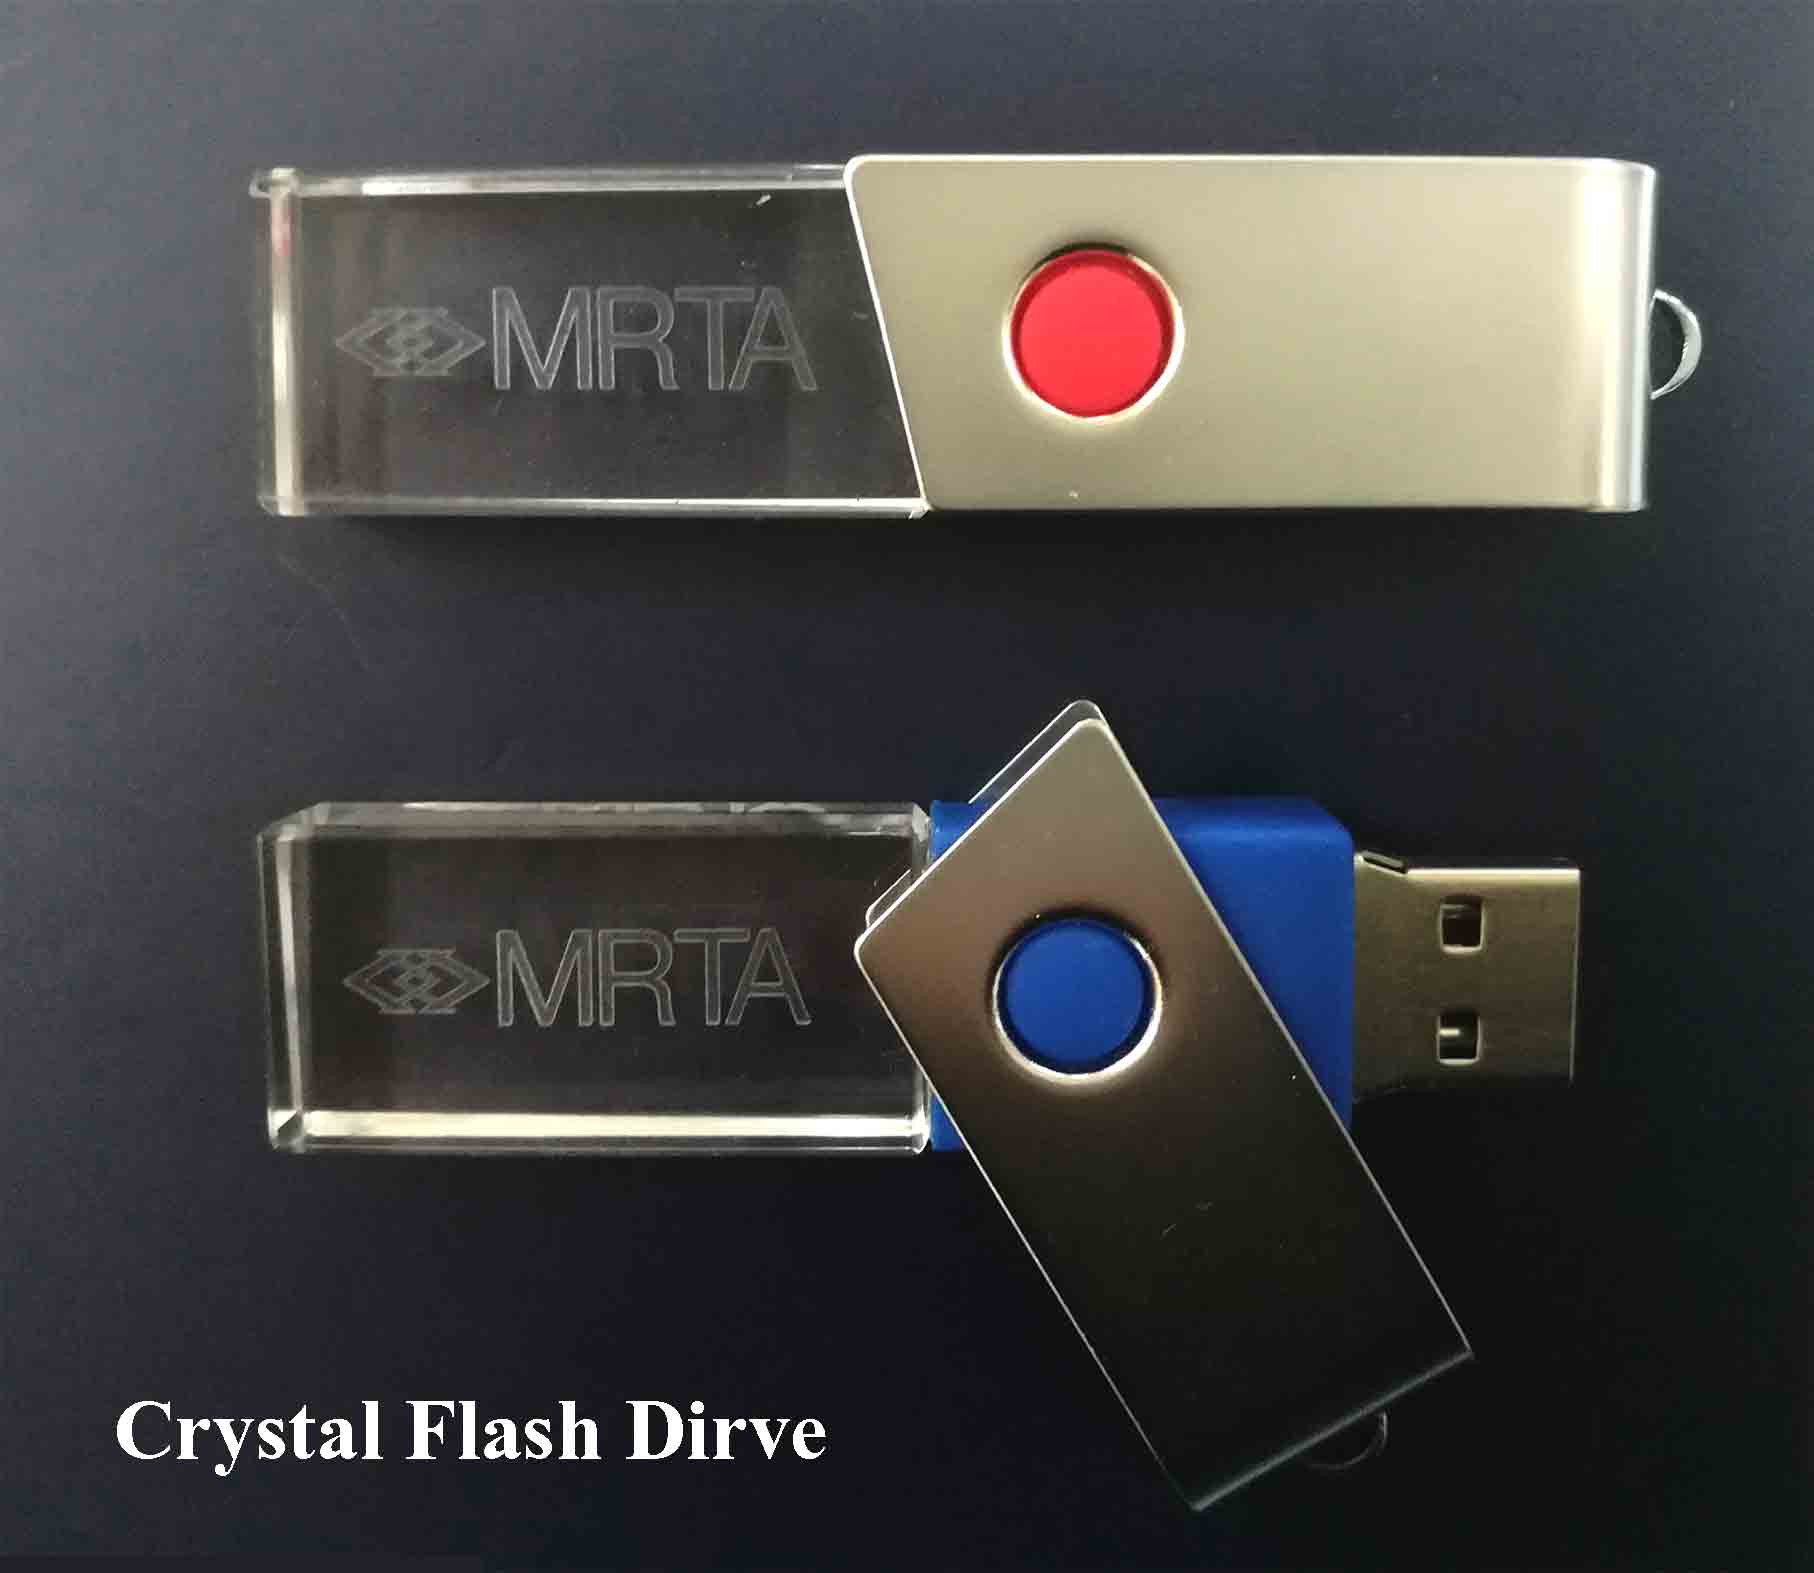 แฟลตไดร์ทคริสตัล #BRTA Crystal Flash Drive